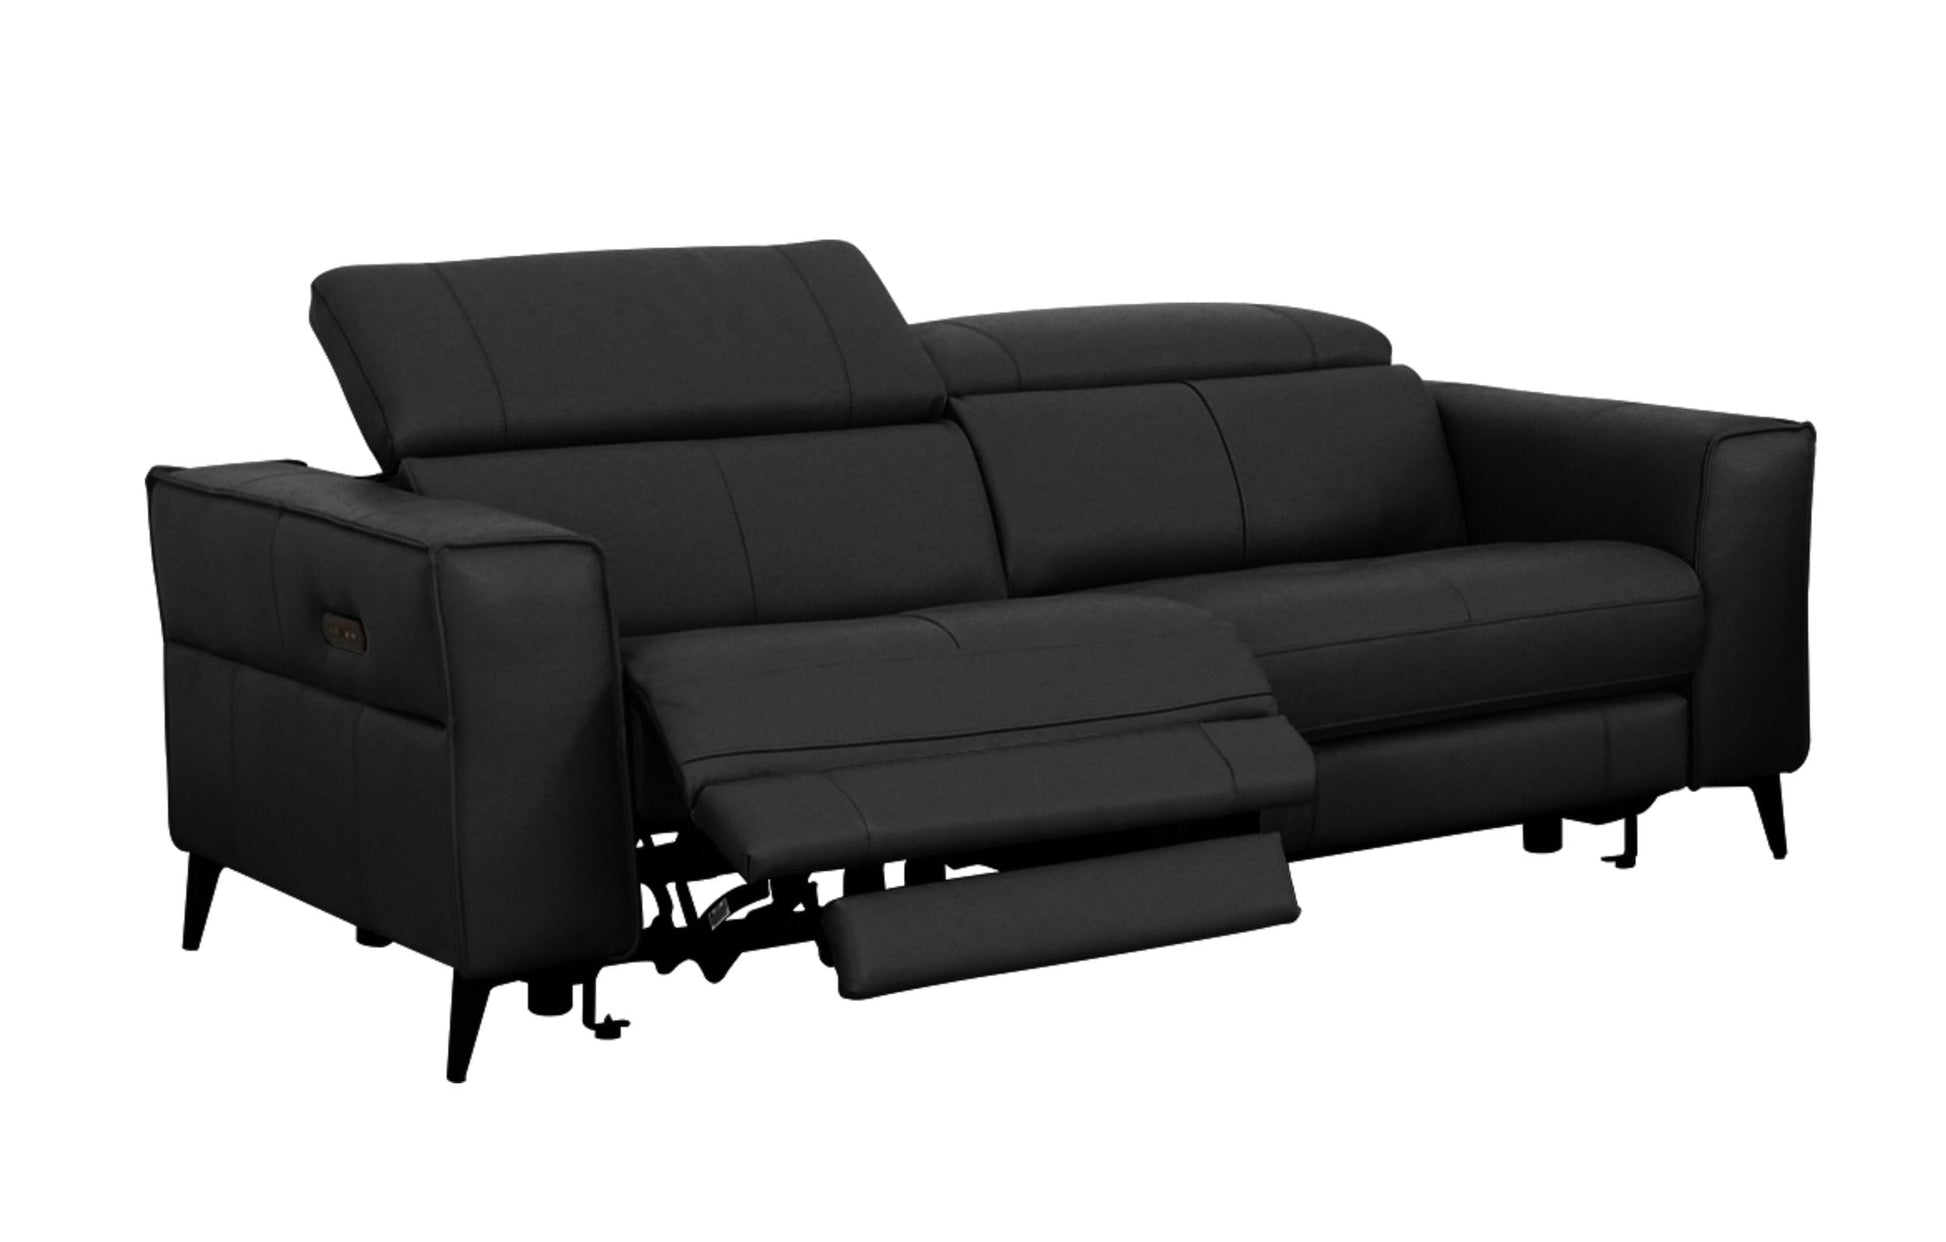 VIG Furniture Divani Casa Nella Black Leather Loveseat Electric Recliners